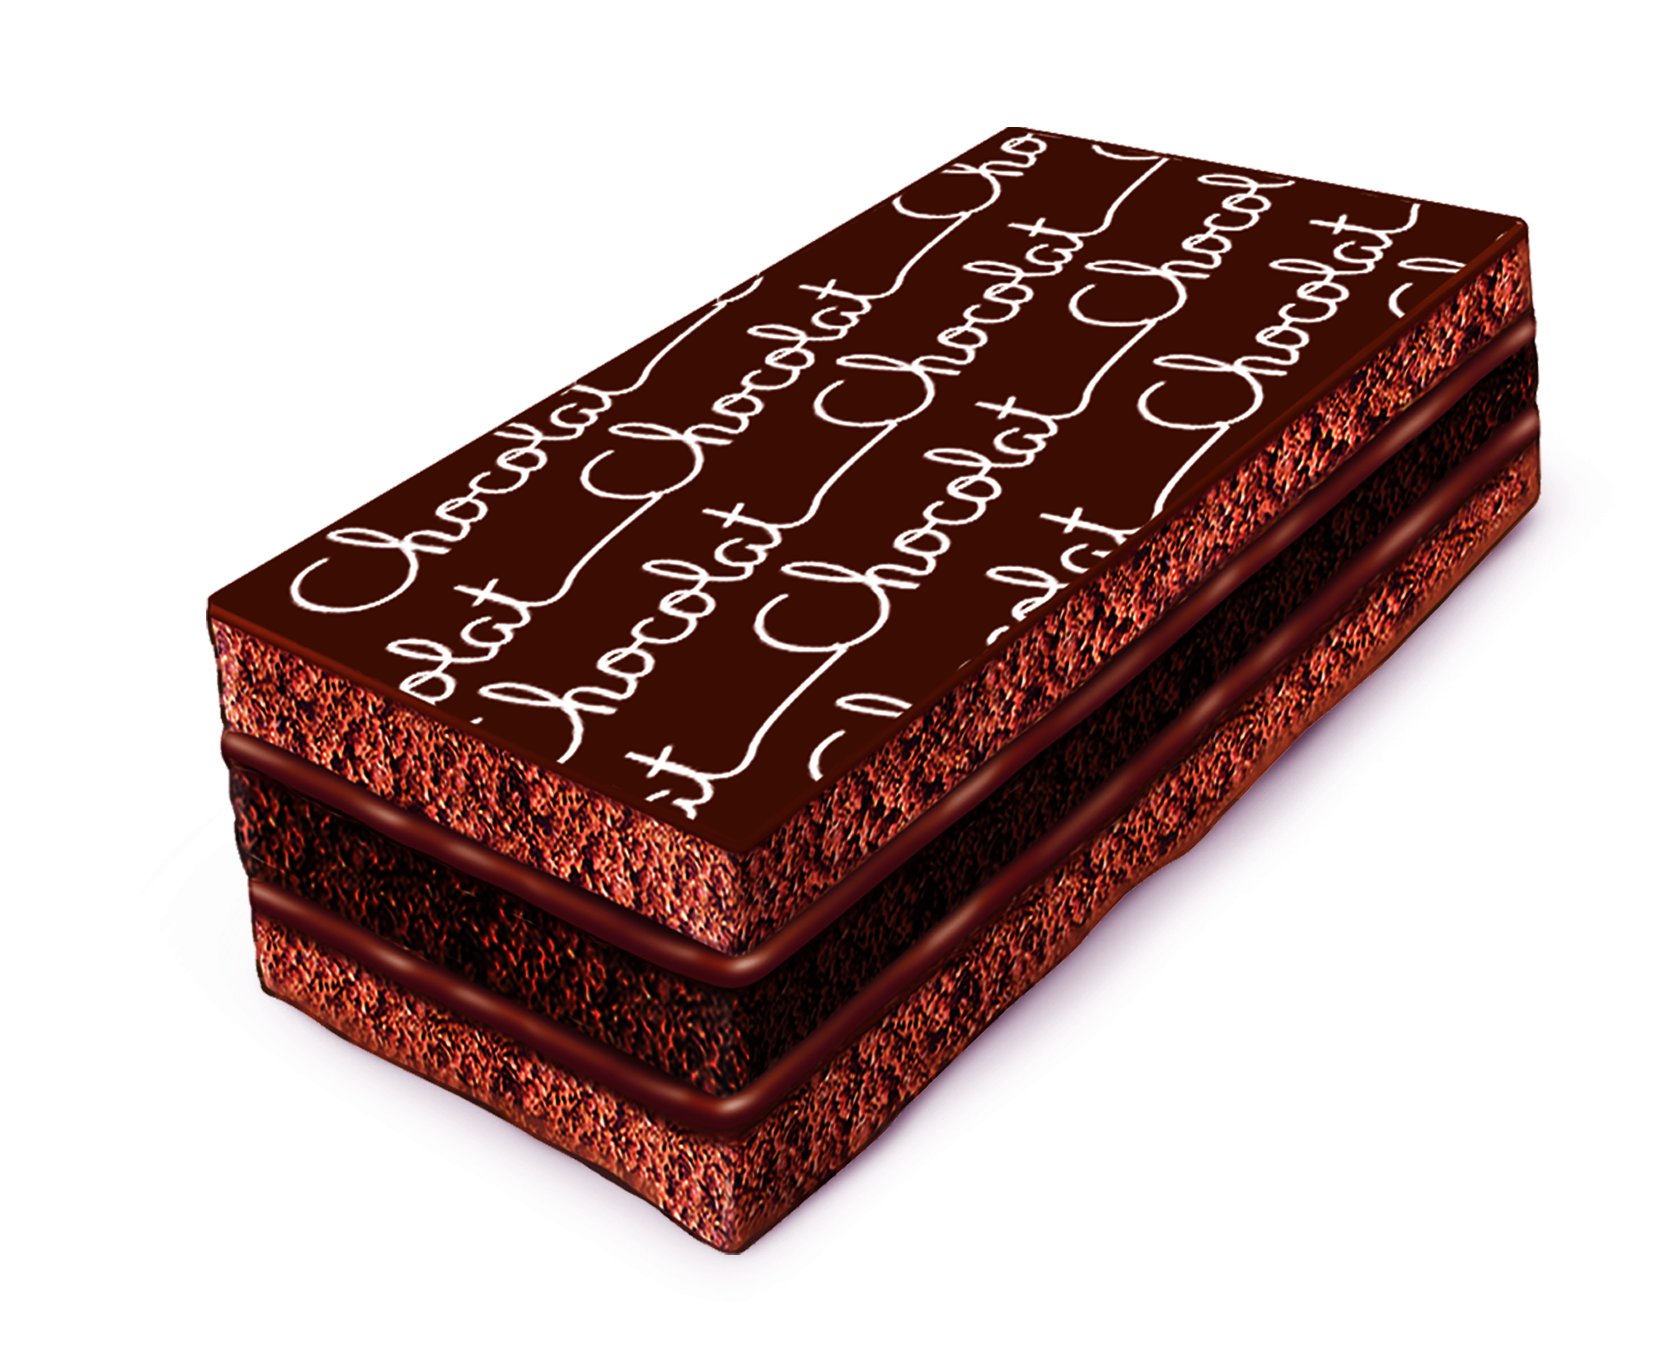 Napolitain Signature chocolat